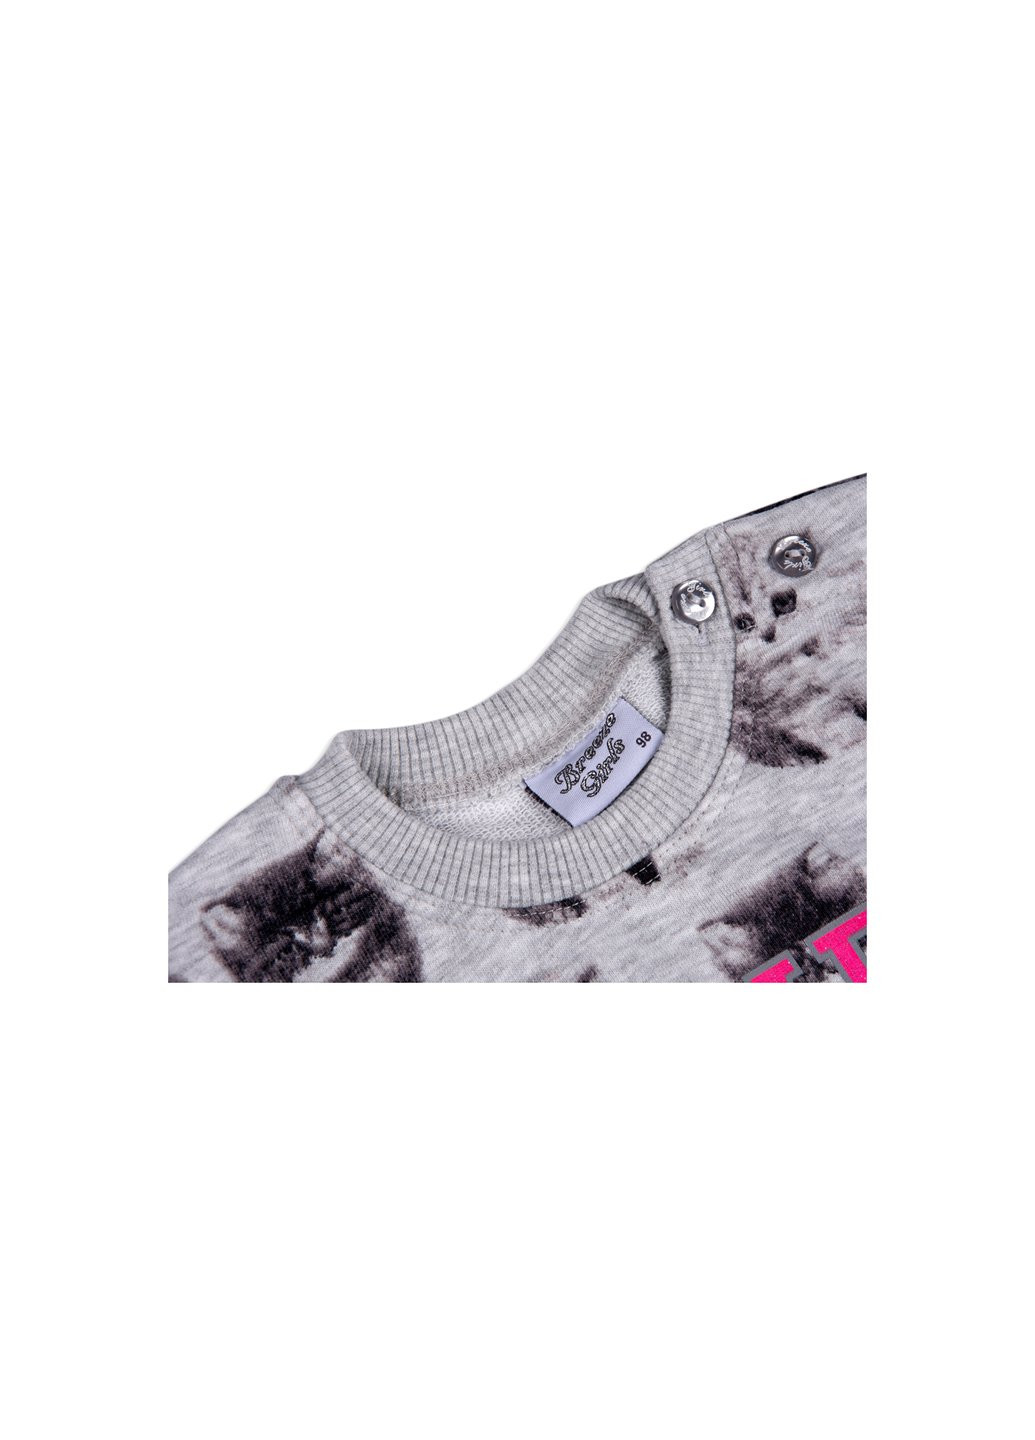 Серый демисезонный набор детской одежды кофта и брюки серый меланж (7874-80g-gray) Breeze